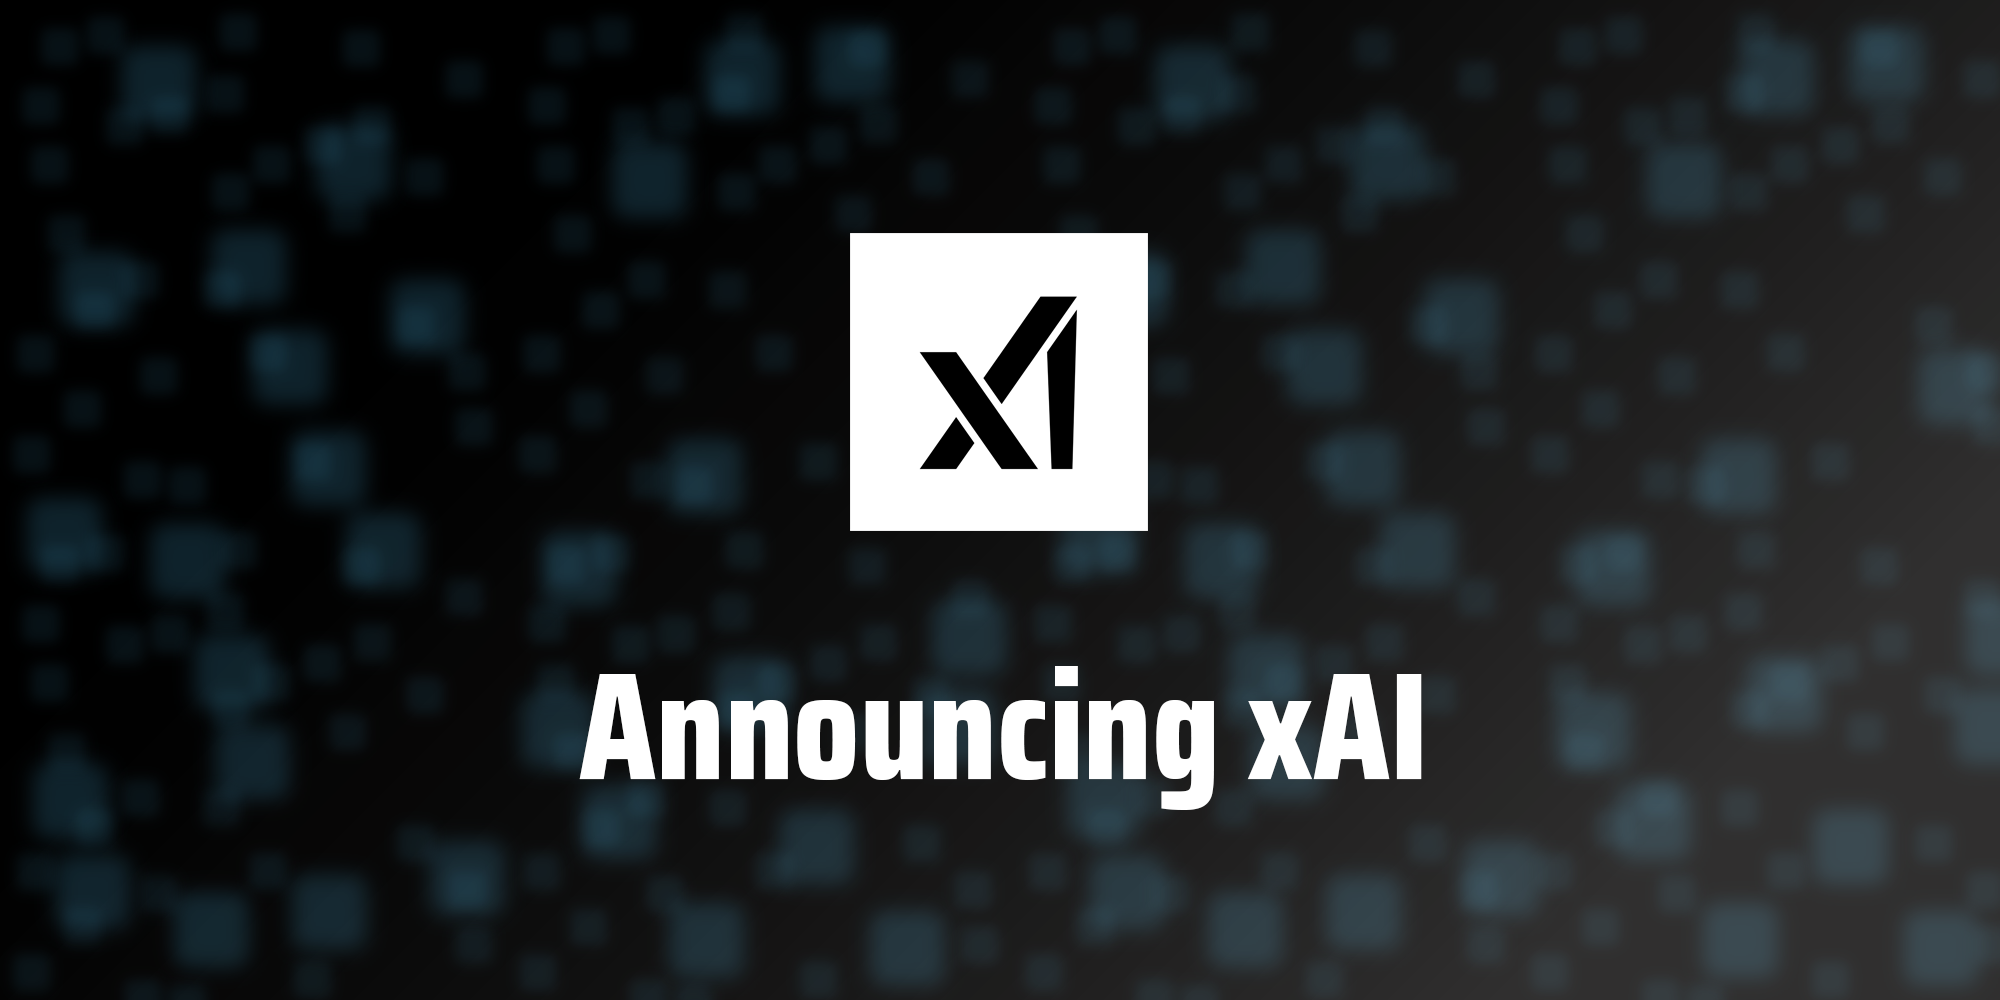 xAI lanzará su primer modelo de inteligencia artificial para un "grupo selecto de usuarios